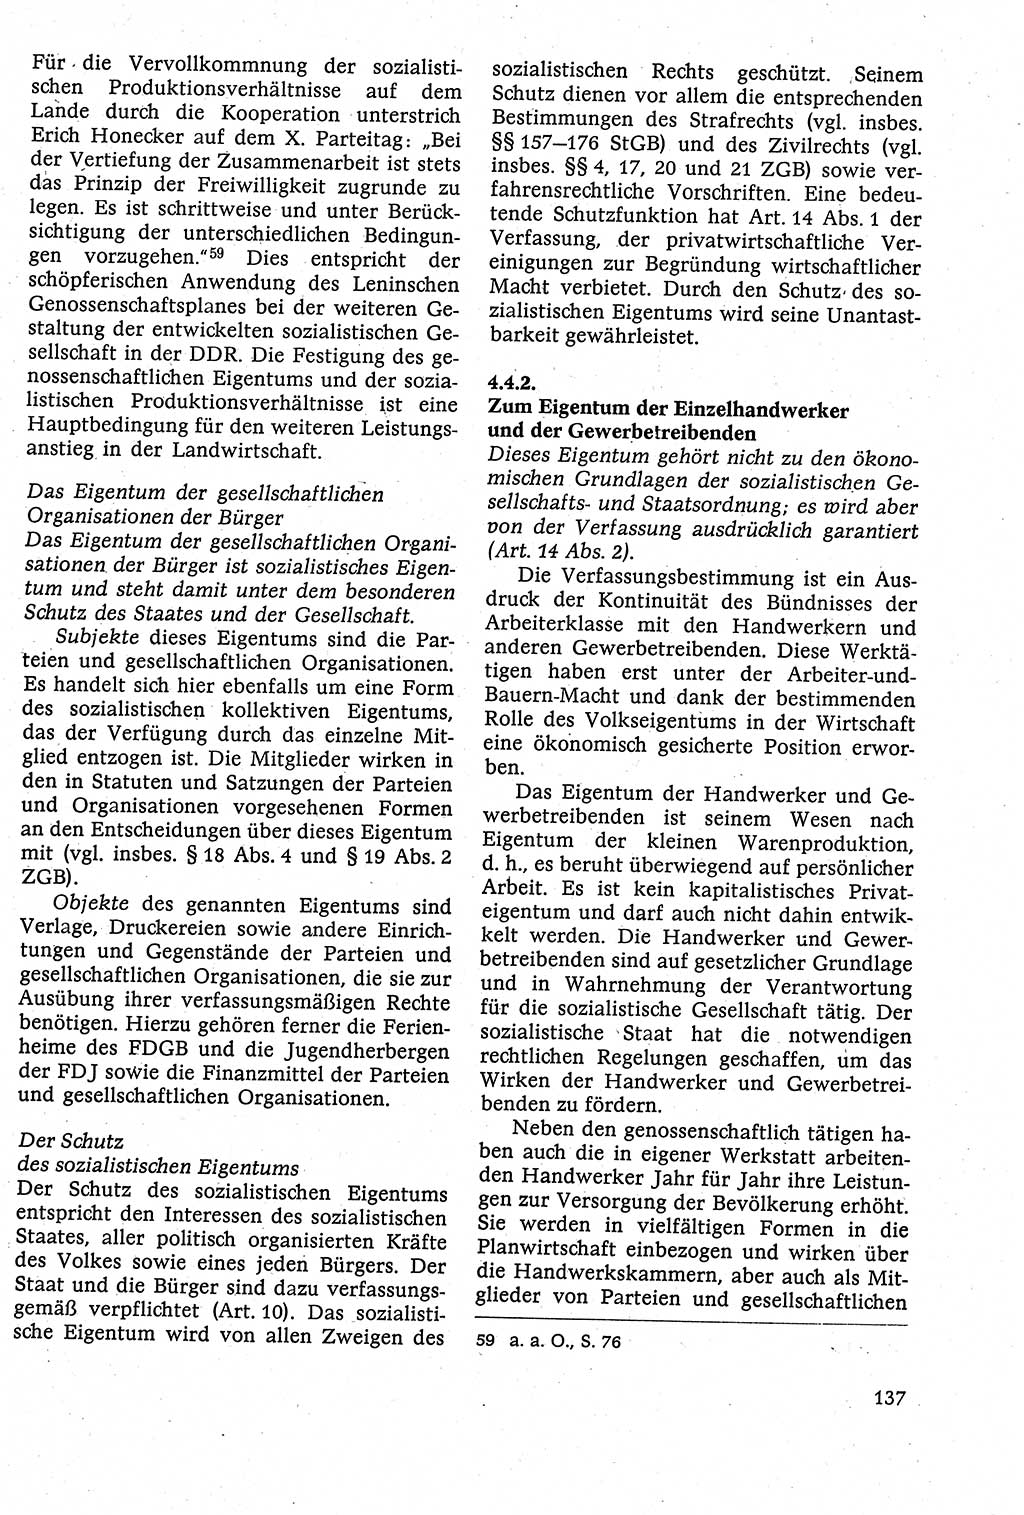 Staatsrecht der DDR [Deutsche Demokratische Republik (DDR)], Lehrbuch 1984, Seite 137 (St.-R. DDR Lb. 1984, S. 137)